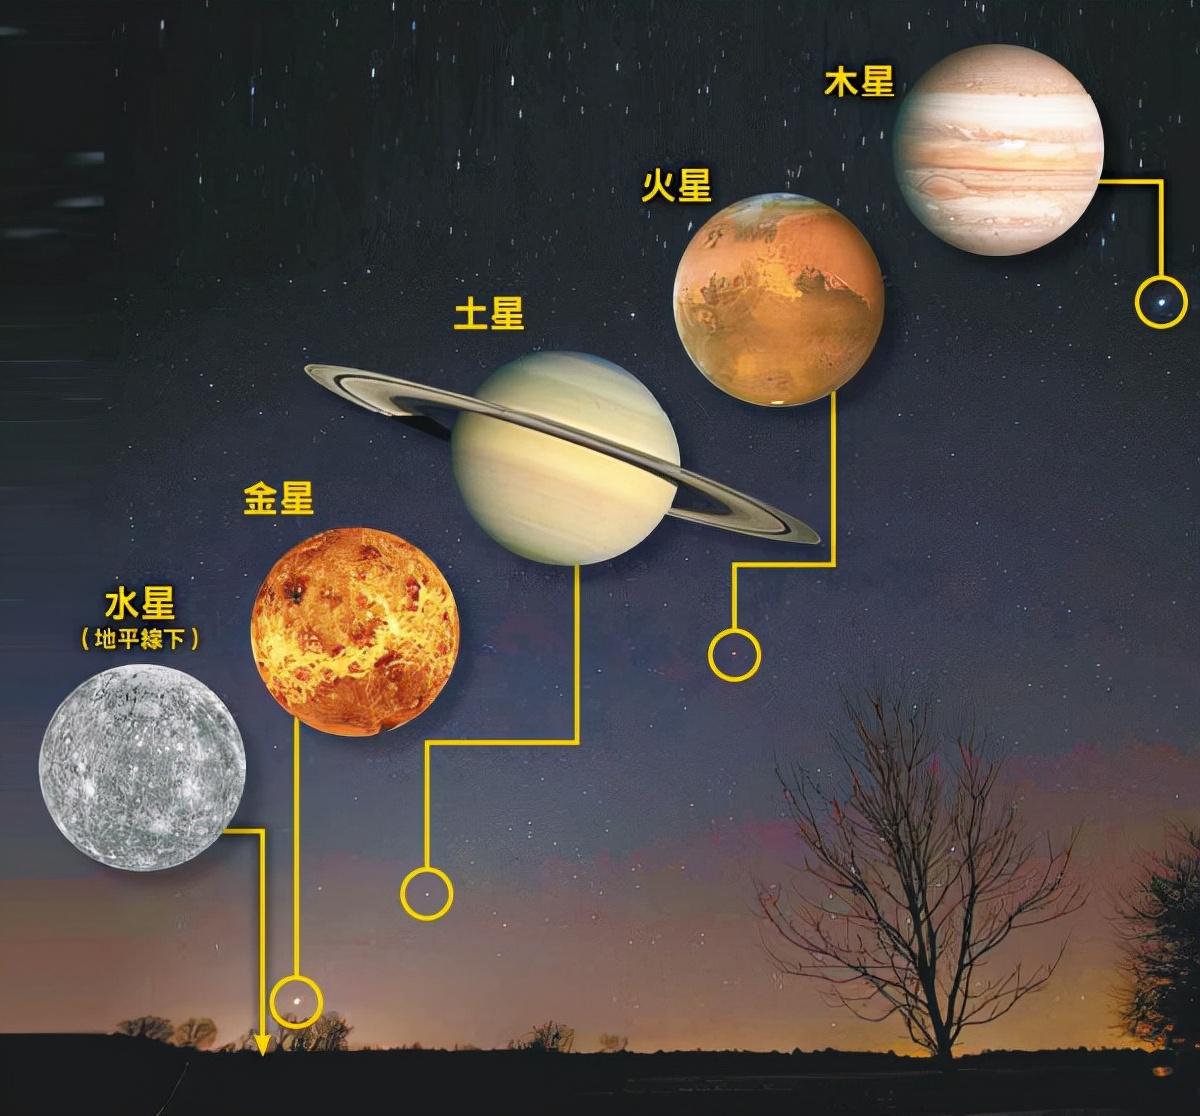 错过这次要等20年8月19号晚金星,木星,水星,火星,土星将会同时出现